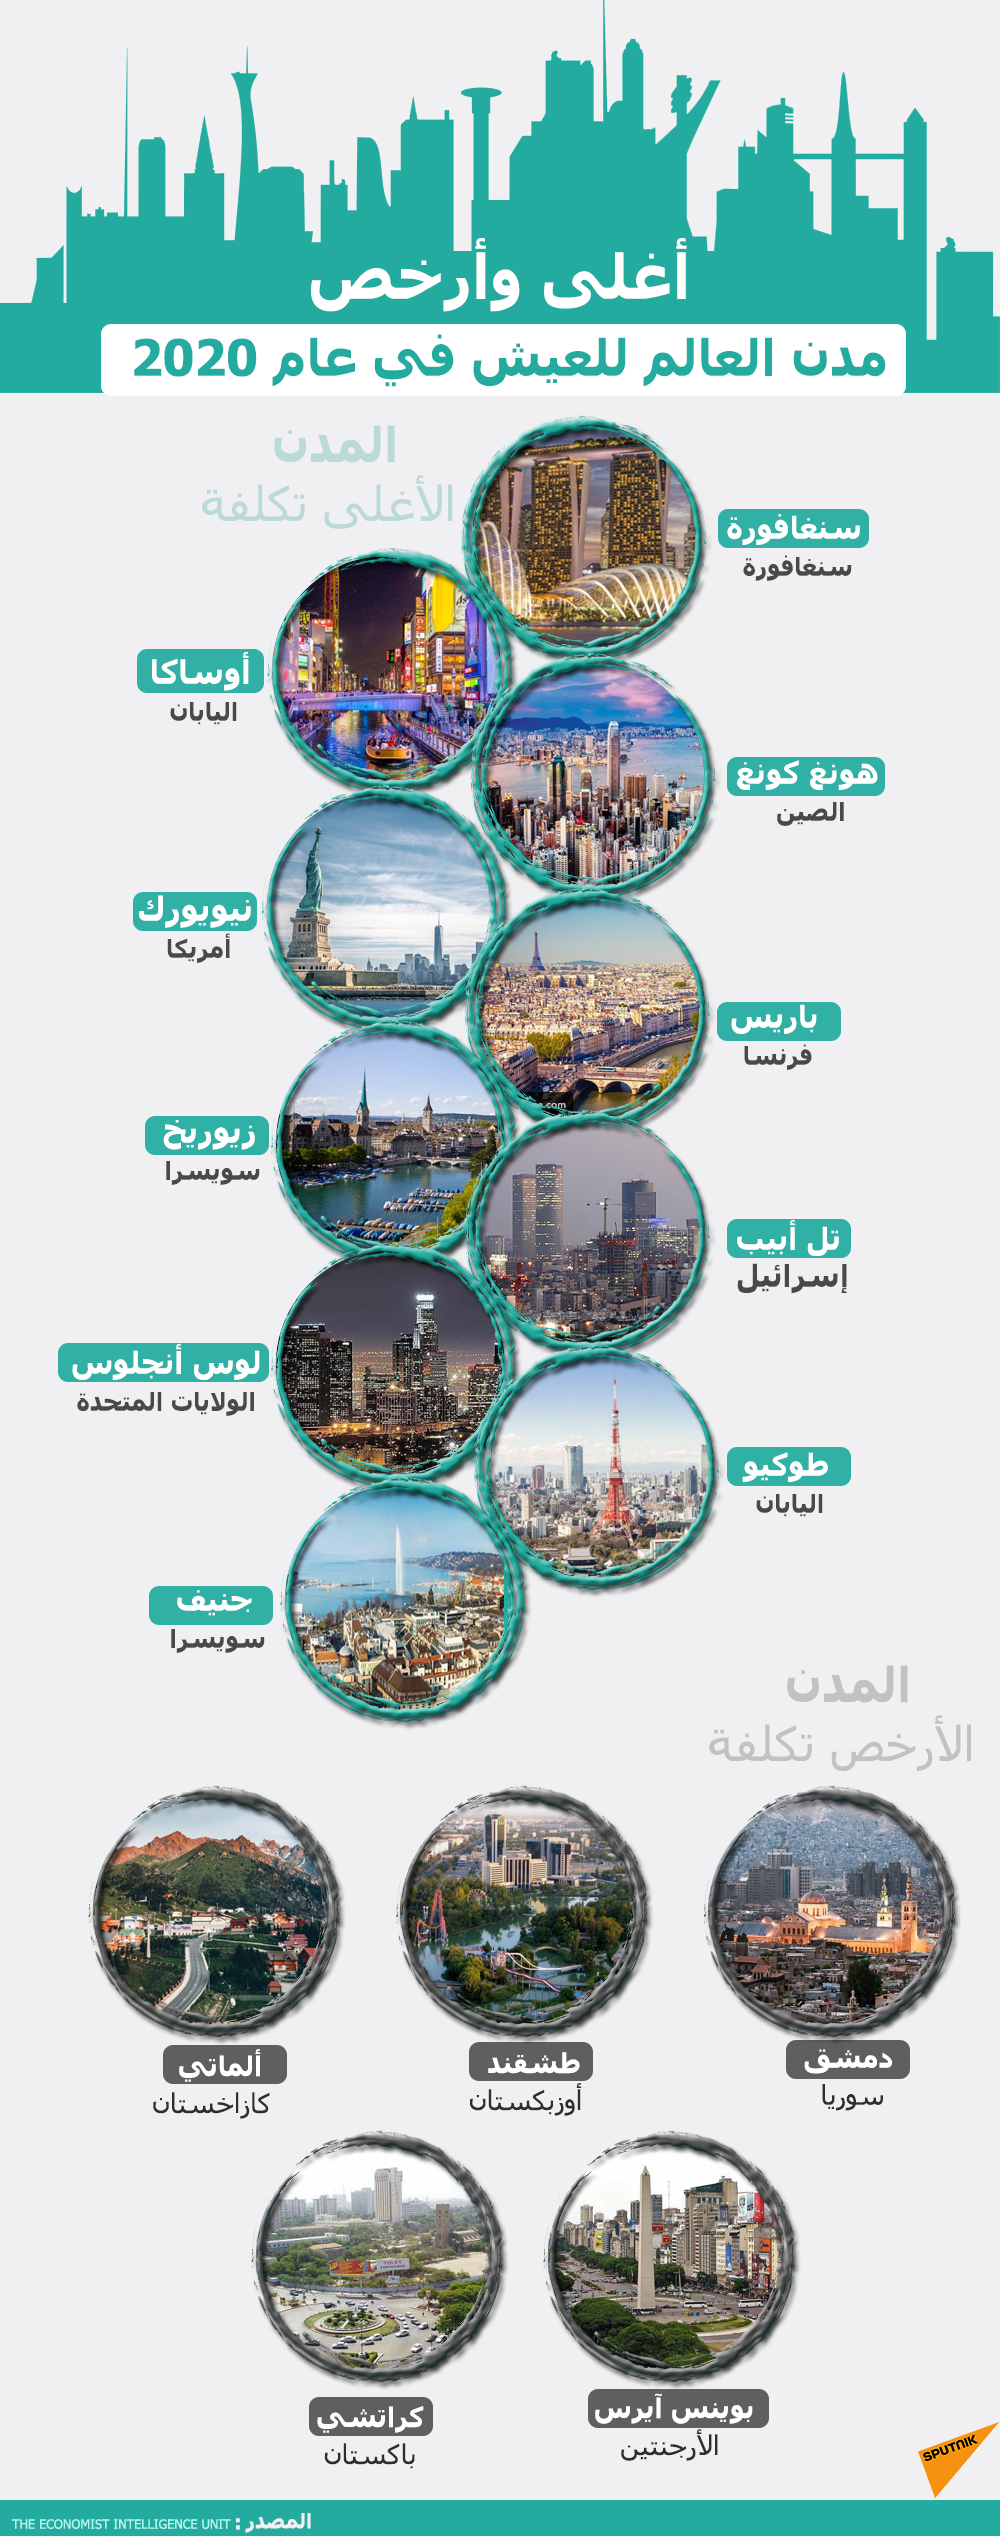 أغلى وأرخص مدن العالم للعيش - سبوتنيك عربي